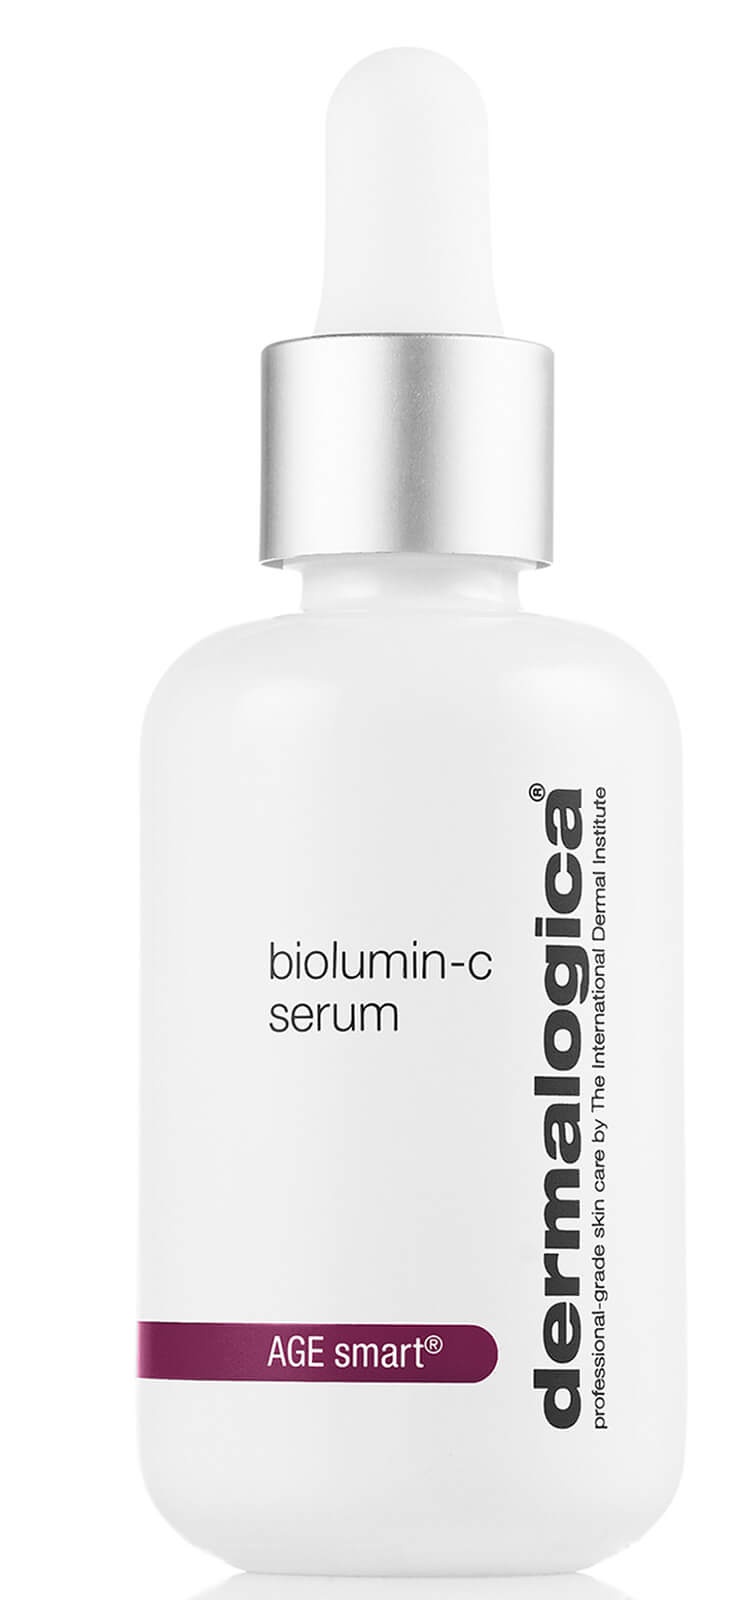 Dermalogica Biolumin-C Serum